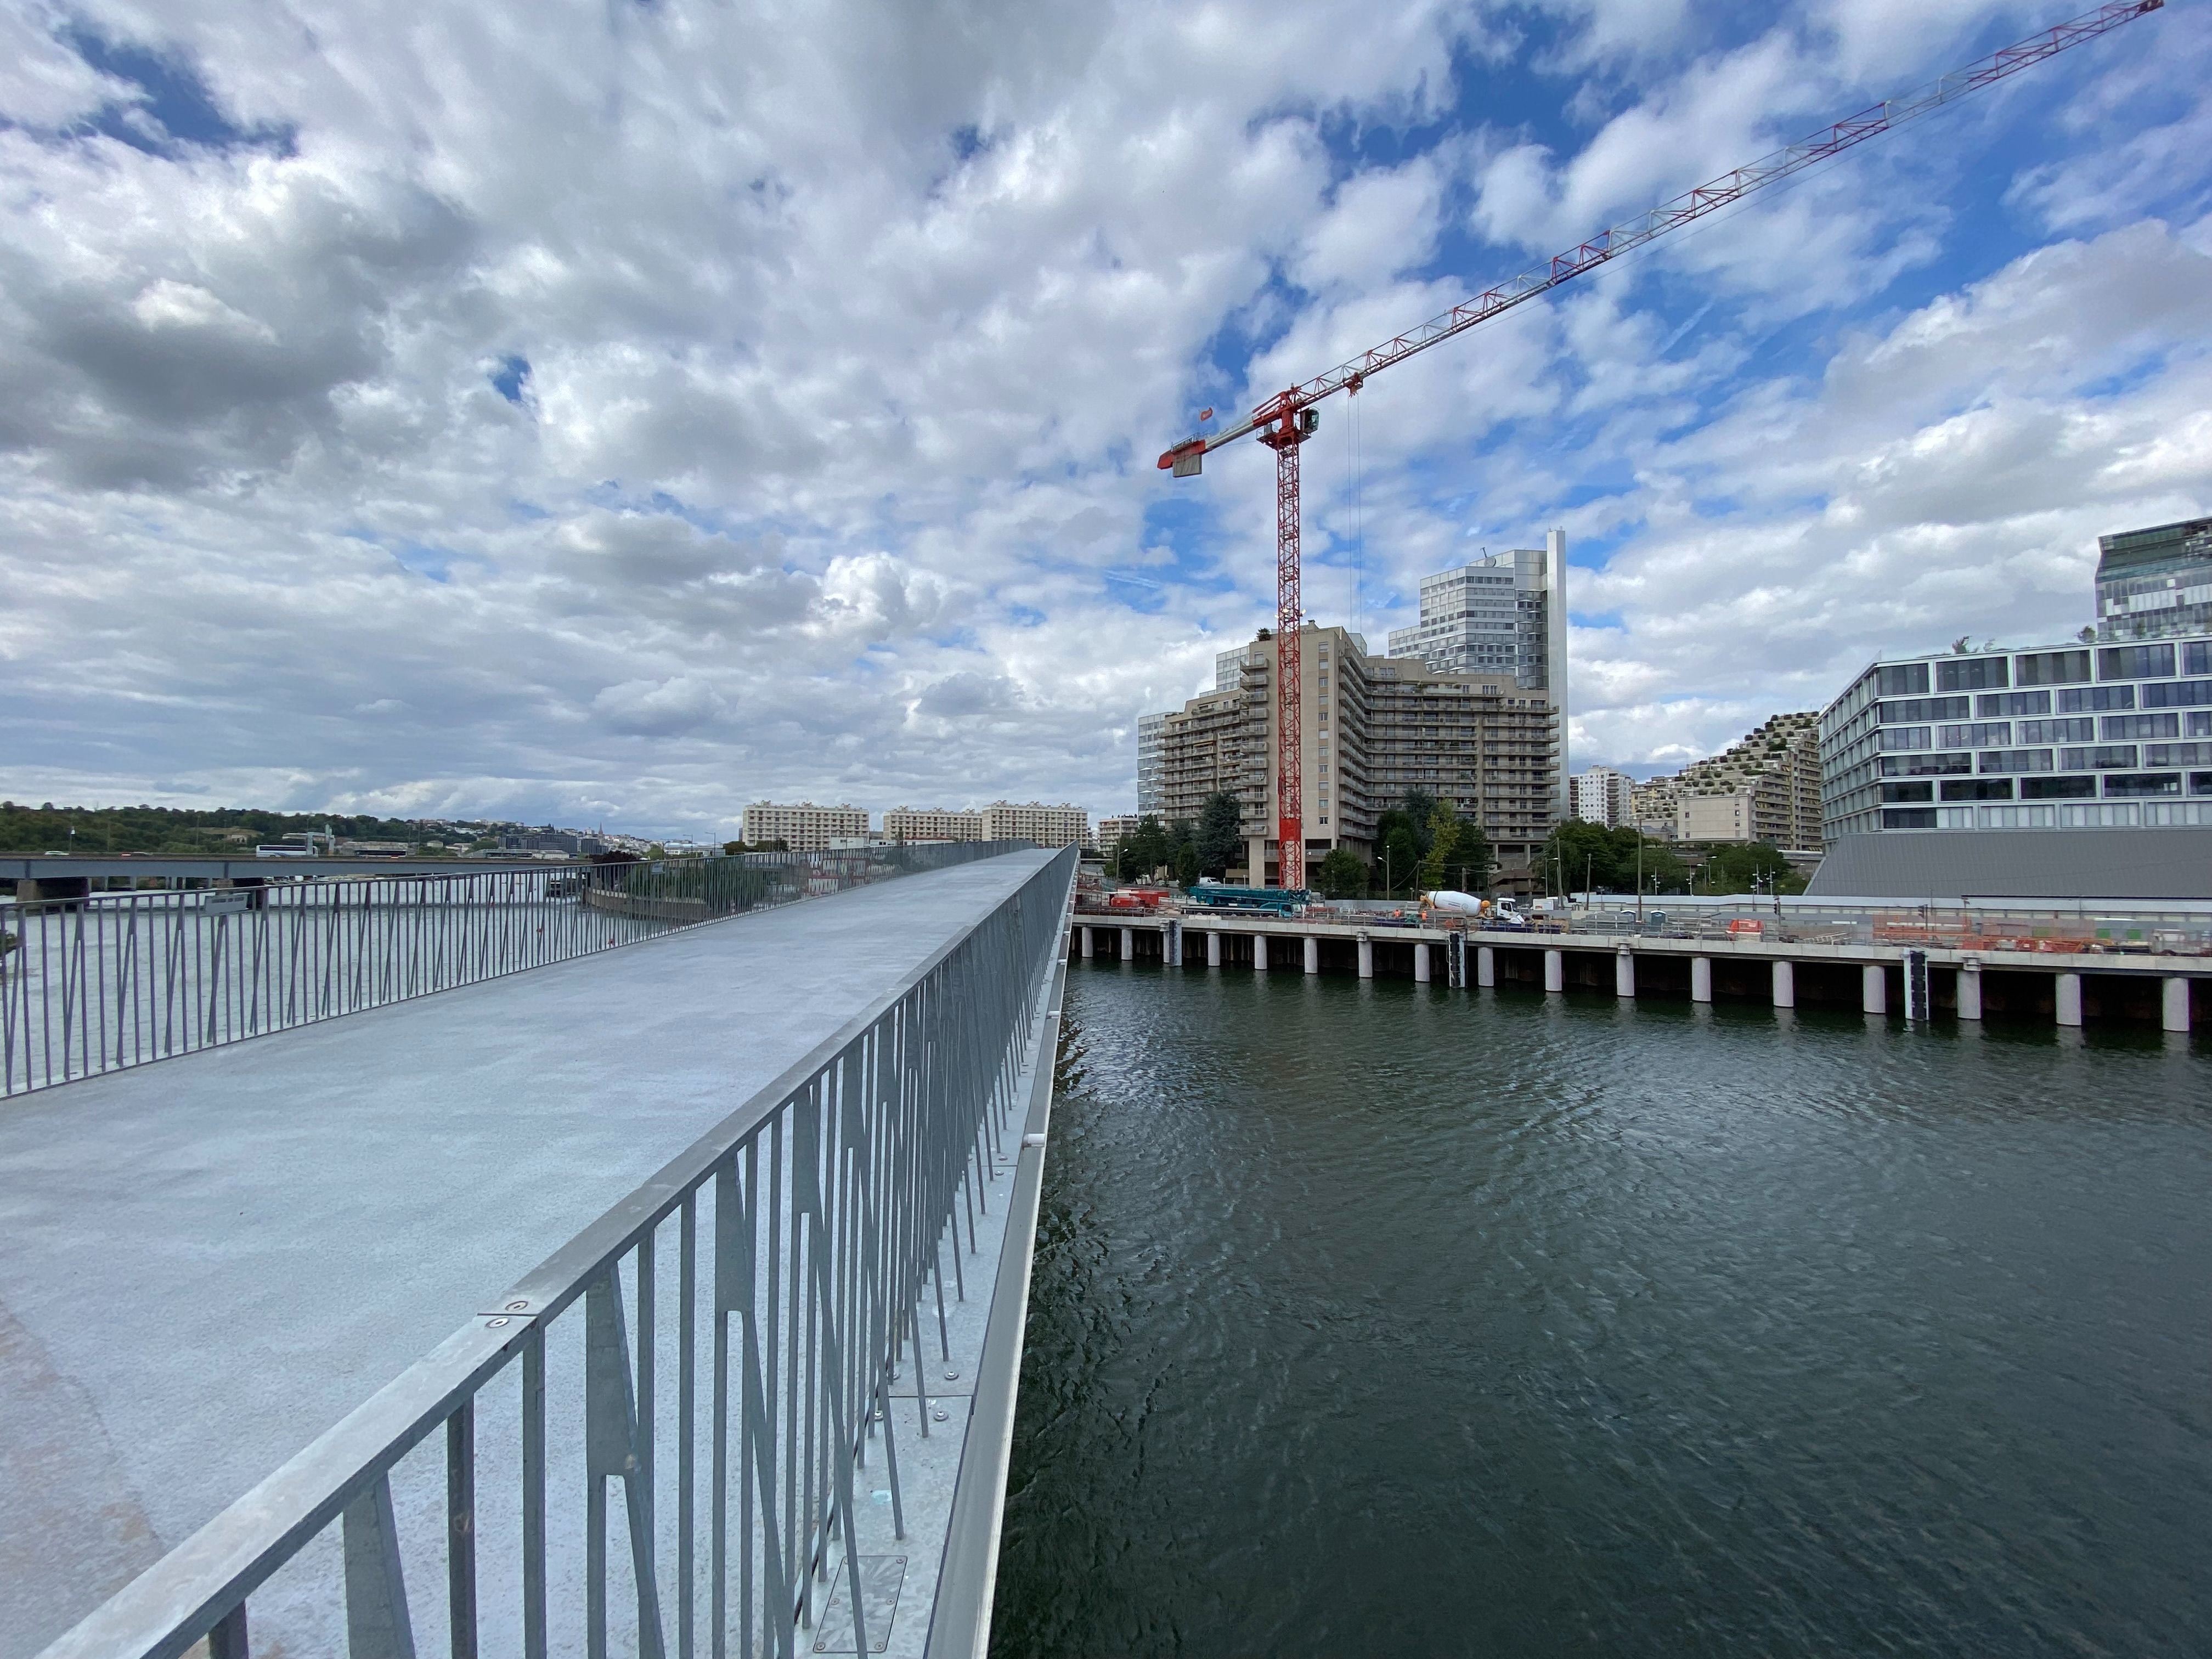 Boulogne-Billancourt (Hauts-de-Seine), le 19 juillet. Le recours des riverains du Pont-de-Sèvres concerne aussi la passerelle piétonne, car celle-ci fait partie du même ouvrage que la future gare. LP/A.C